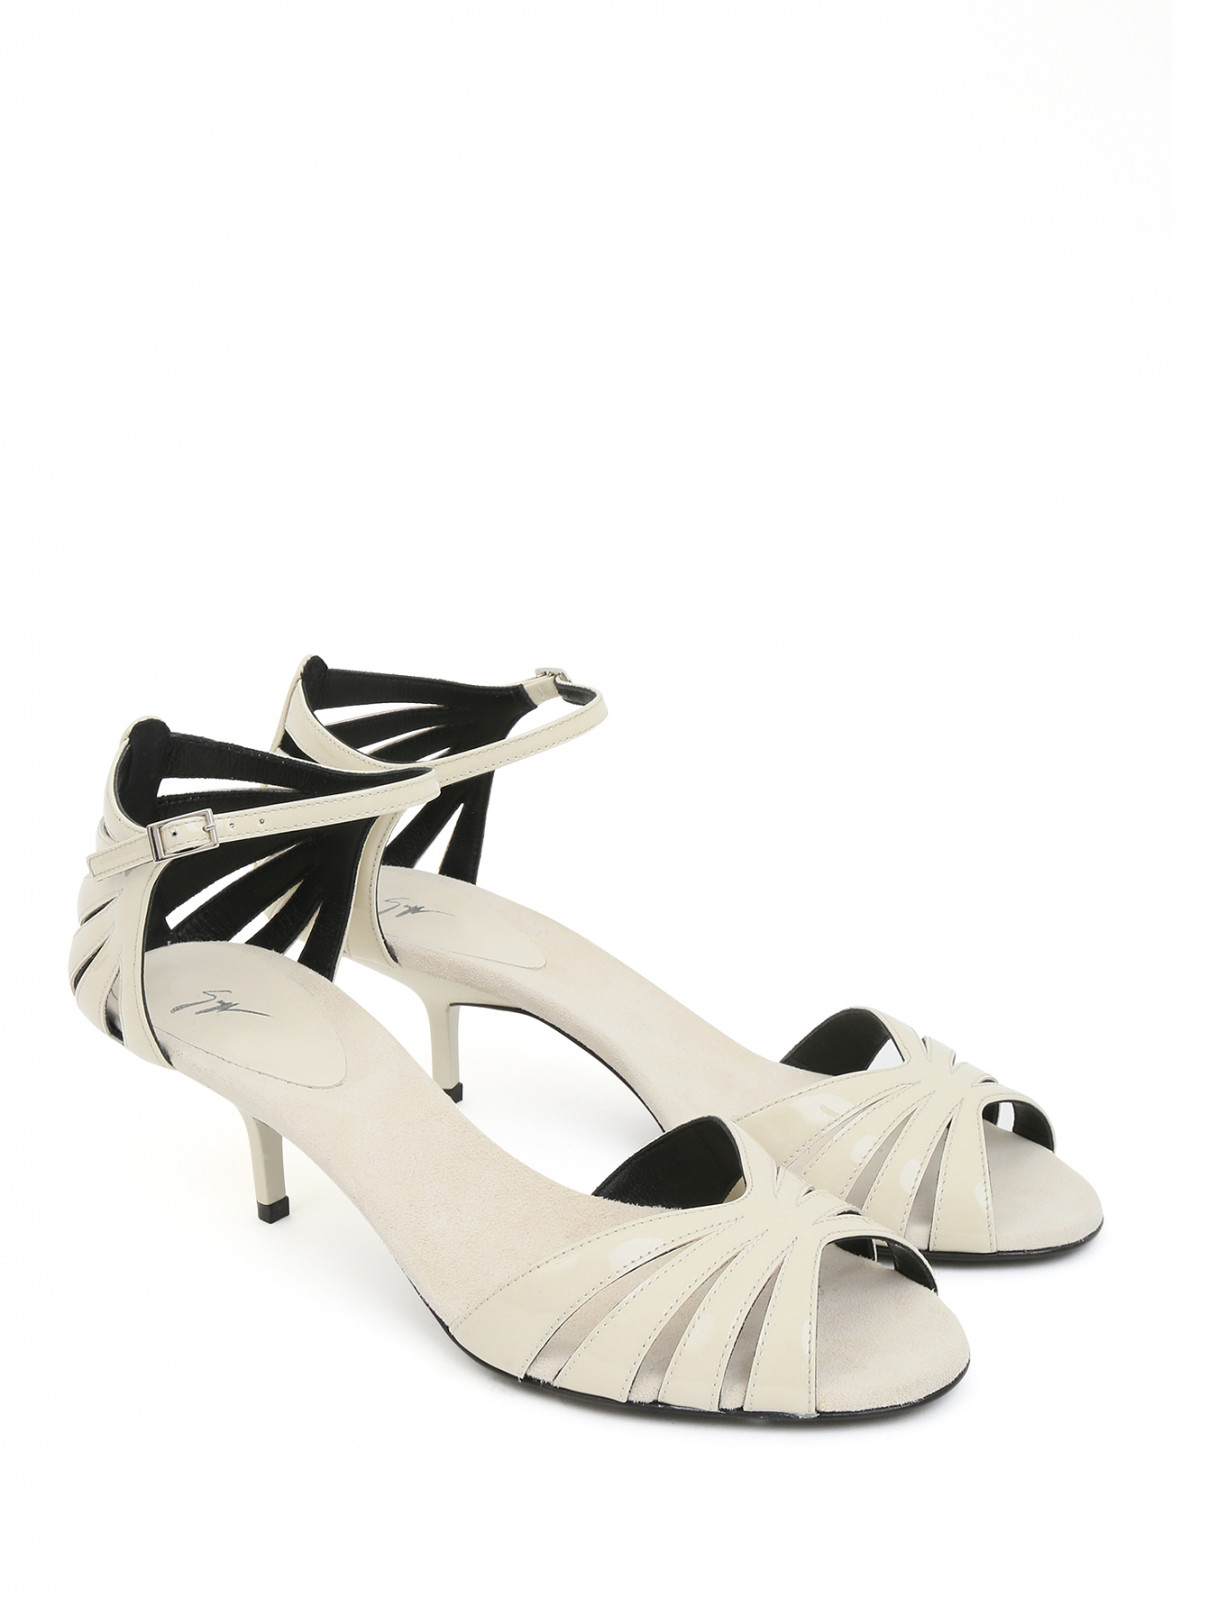 Босоножки из лаковой кожи на контрастном каблуке Giuseppe Zanotti  –  Общий вид  – Цвет:  Белый